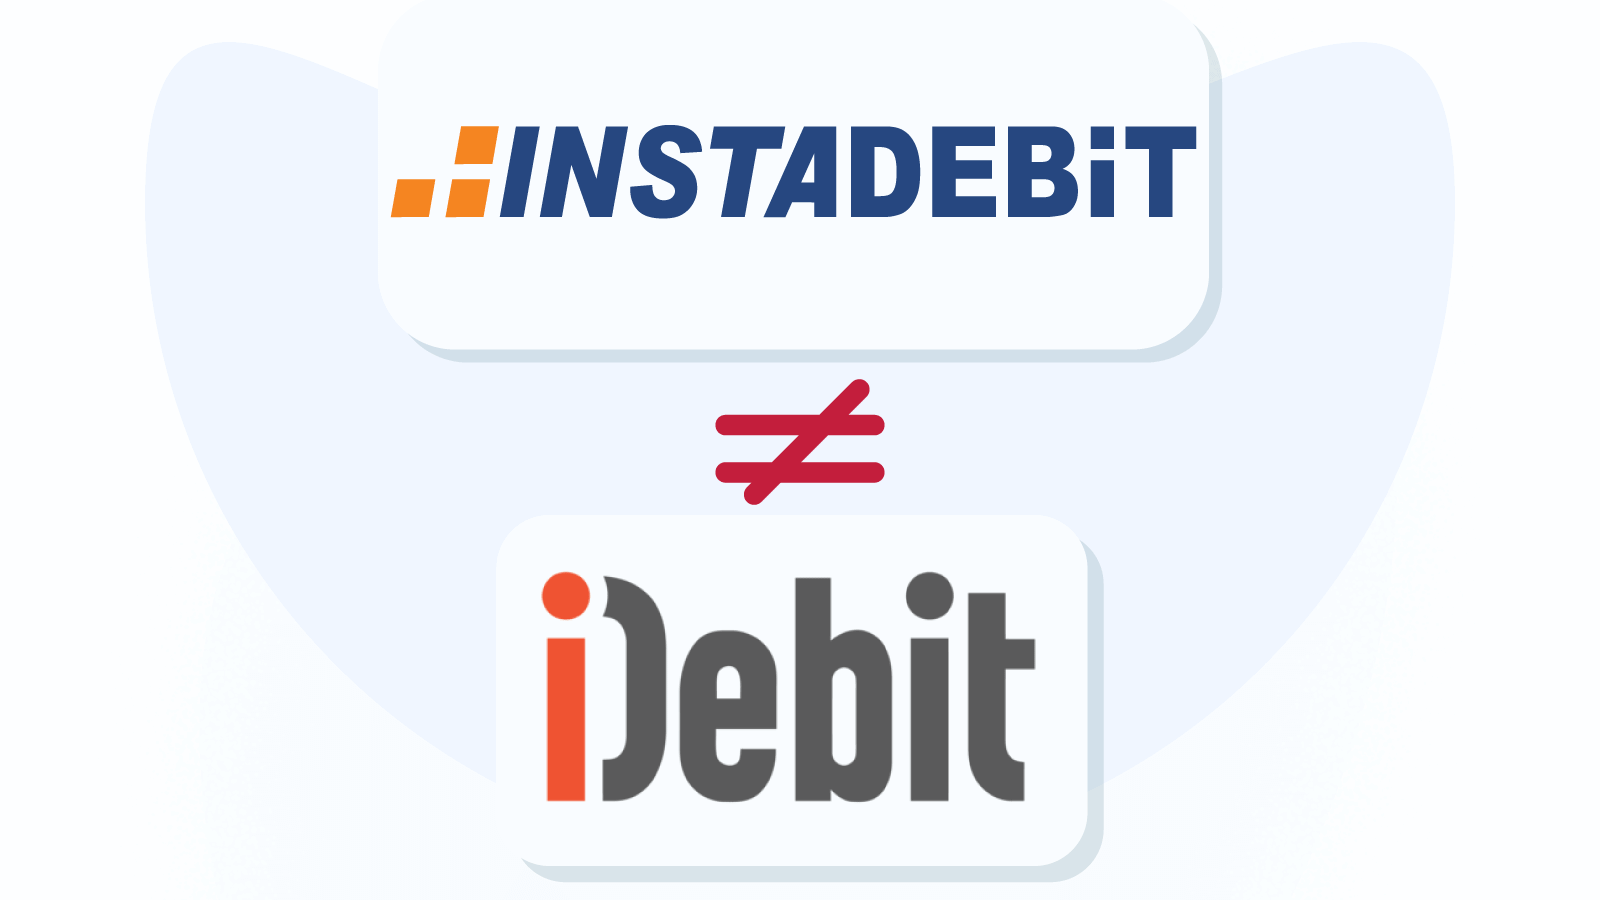 How is Instadebit different from iDebit